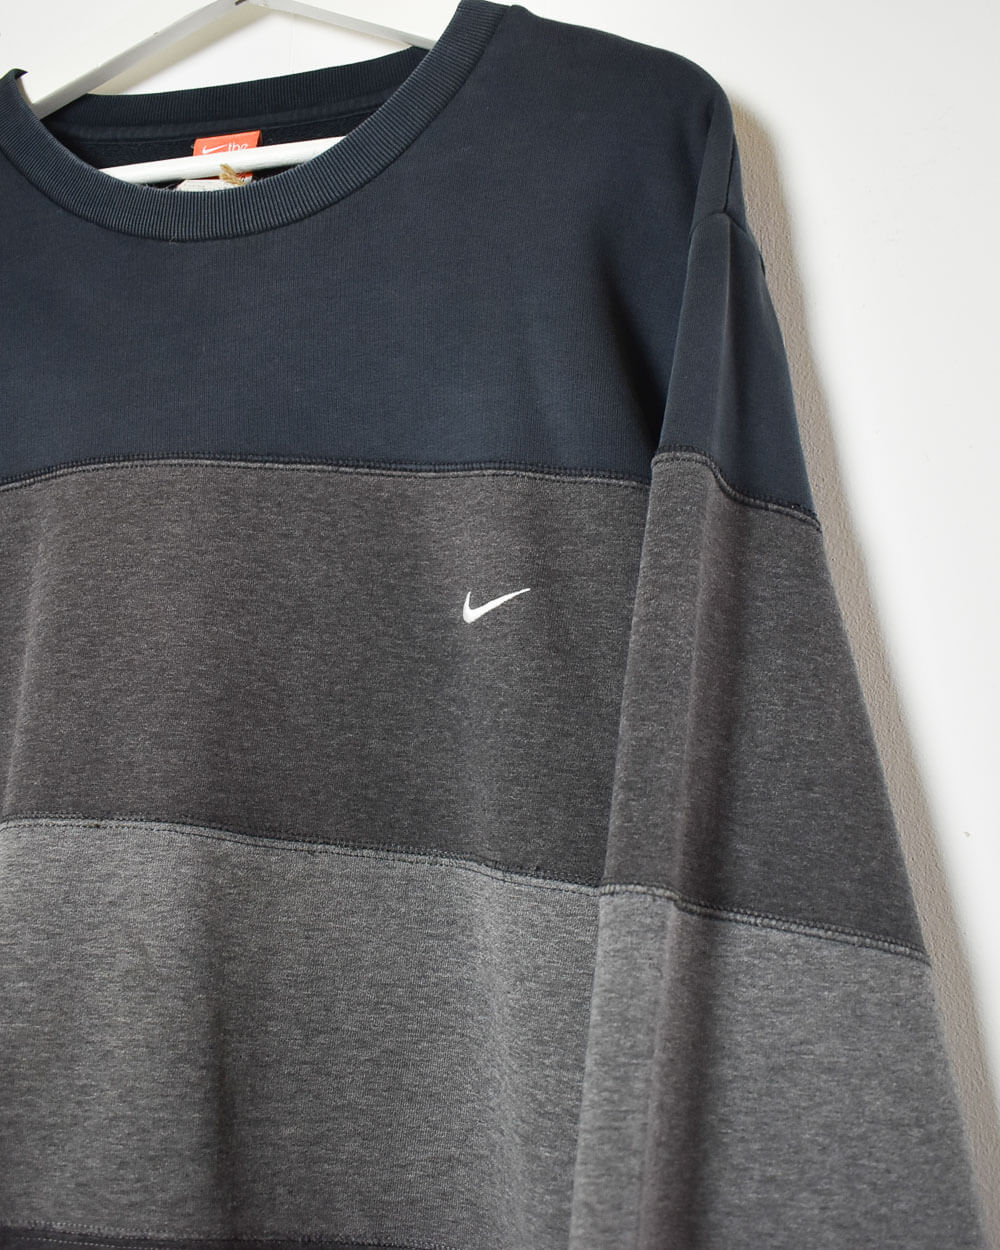 Grey Nike The Athletic Dept Sweatshirt - X-Large